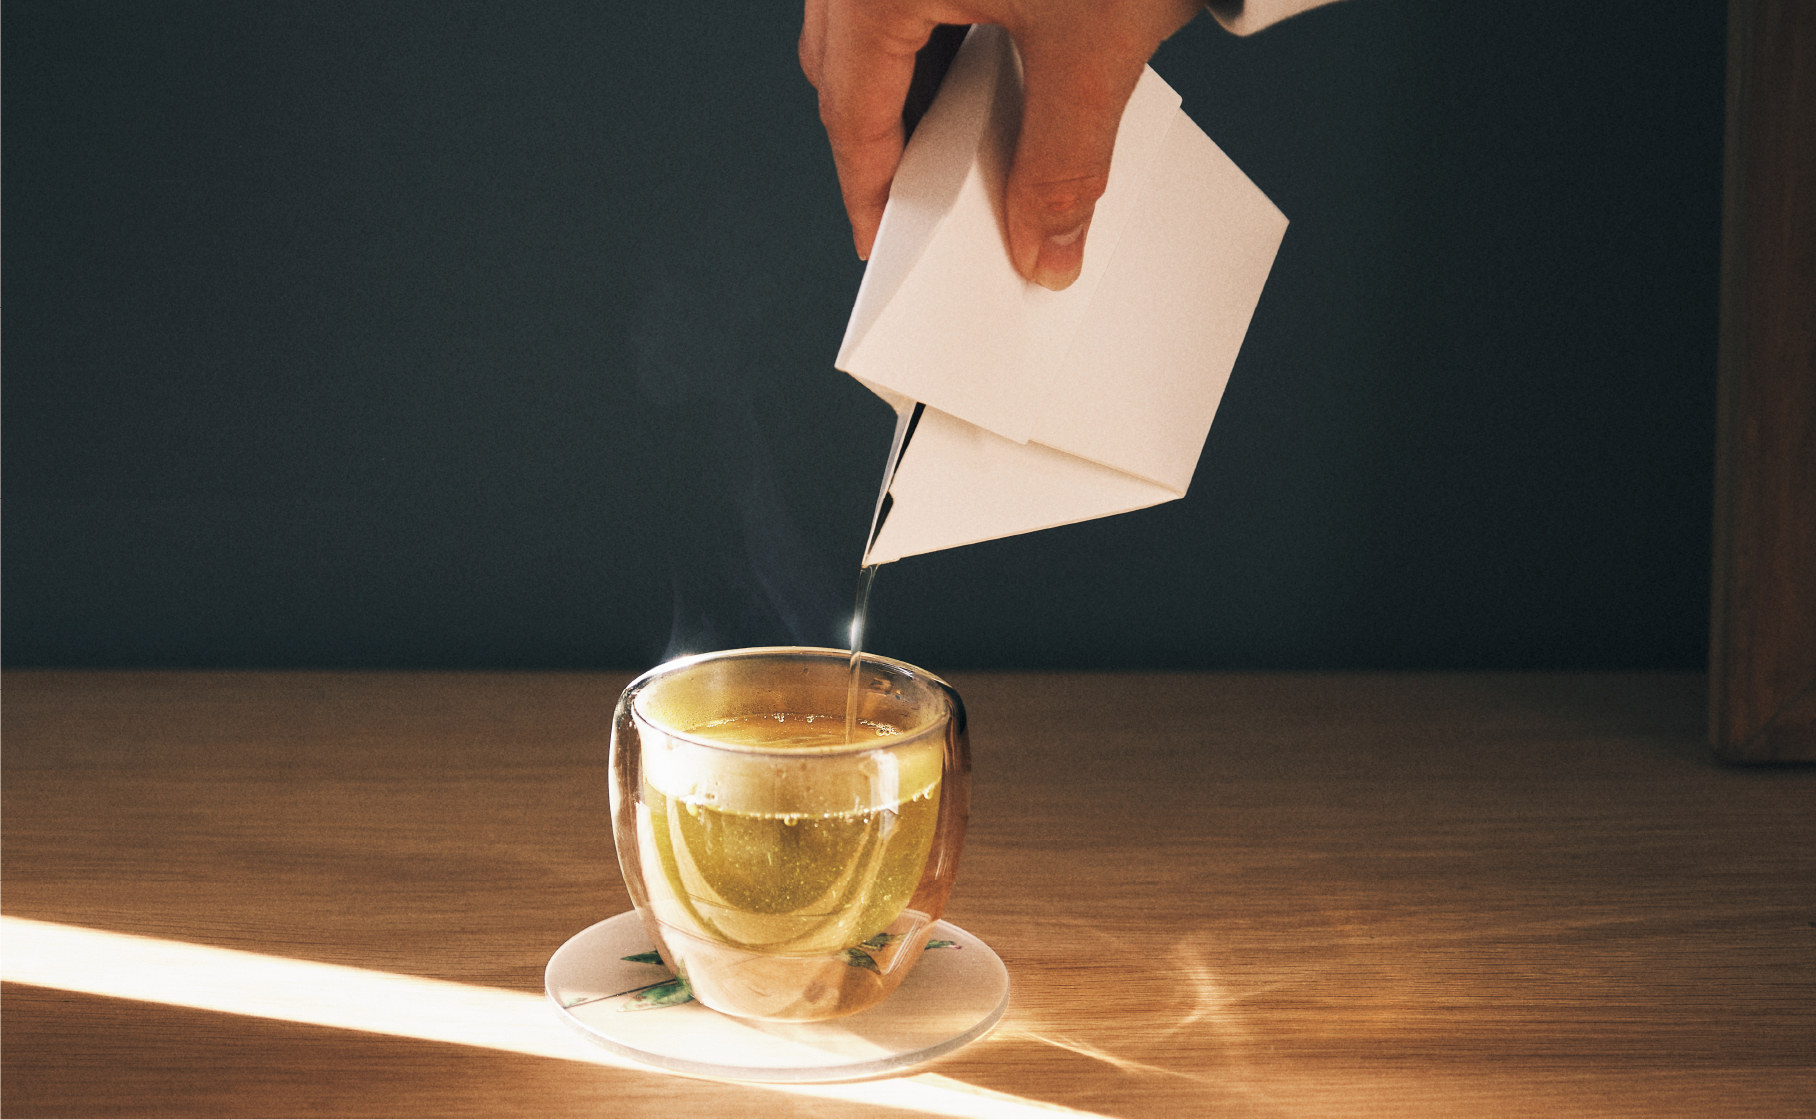 “紙の急須”とこだわりの茶葉がセットになったプチギフトを
4月18日に発売！メッセージを書き込めるパッケージでデザイン